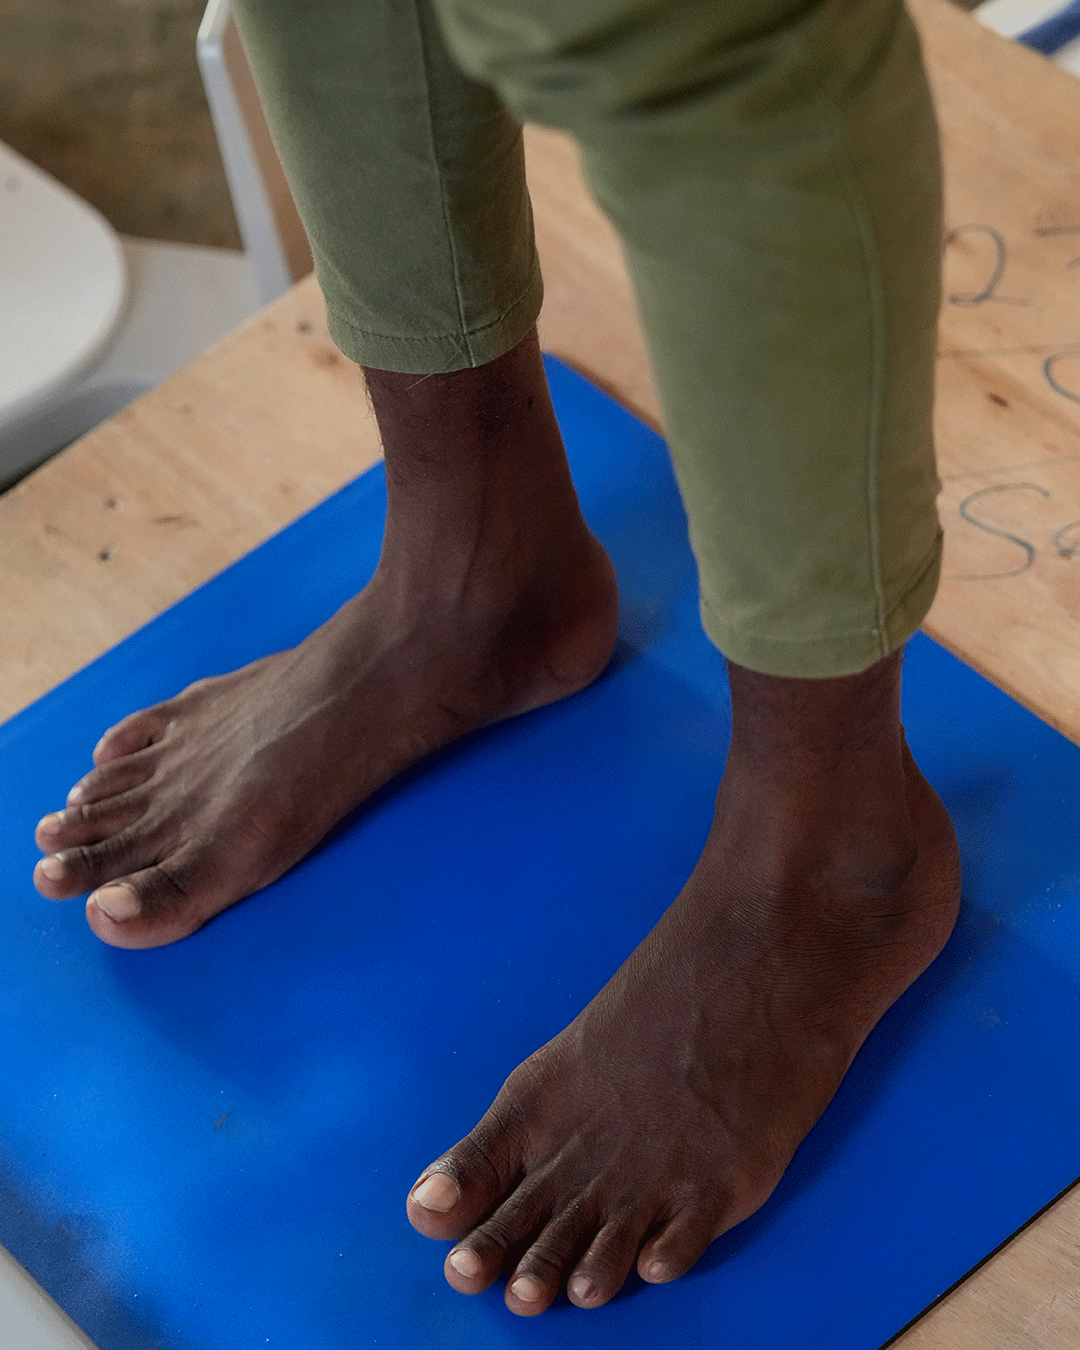 Influencia socioeconómica en la salud del pie: